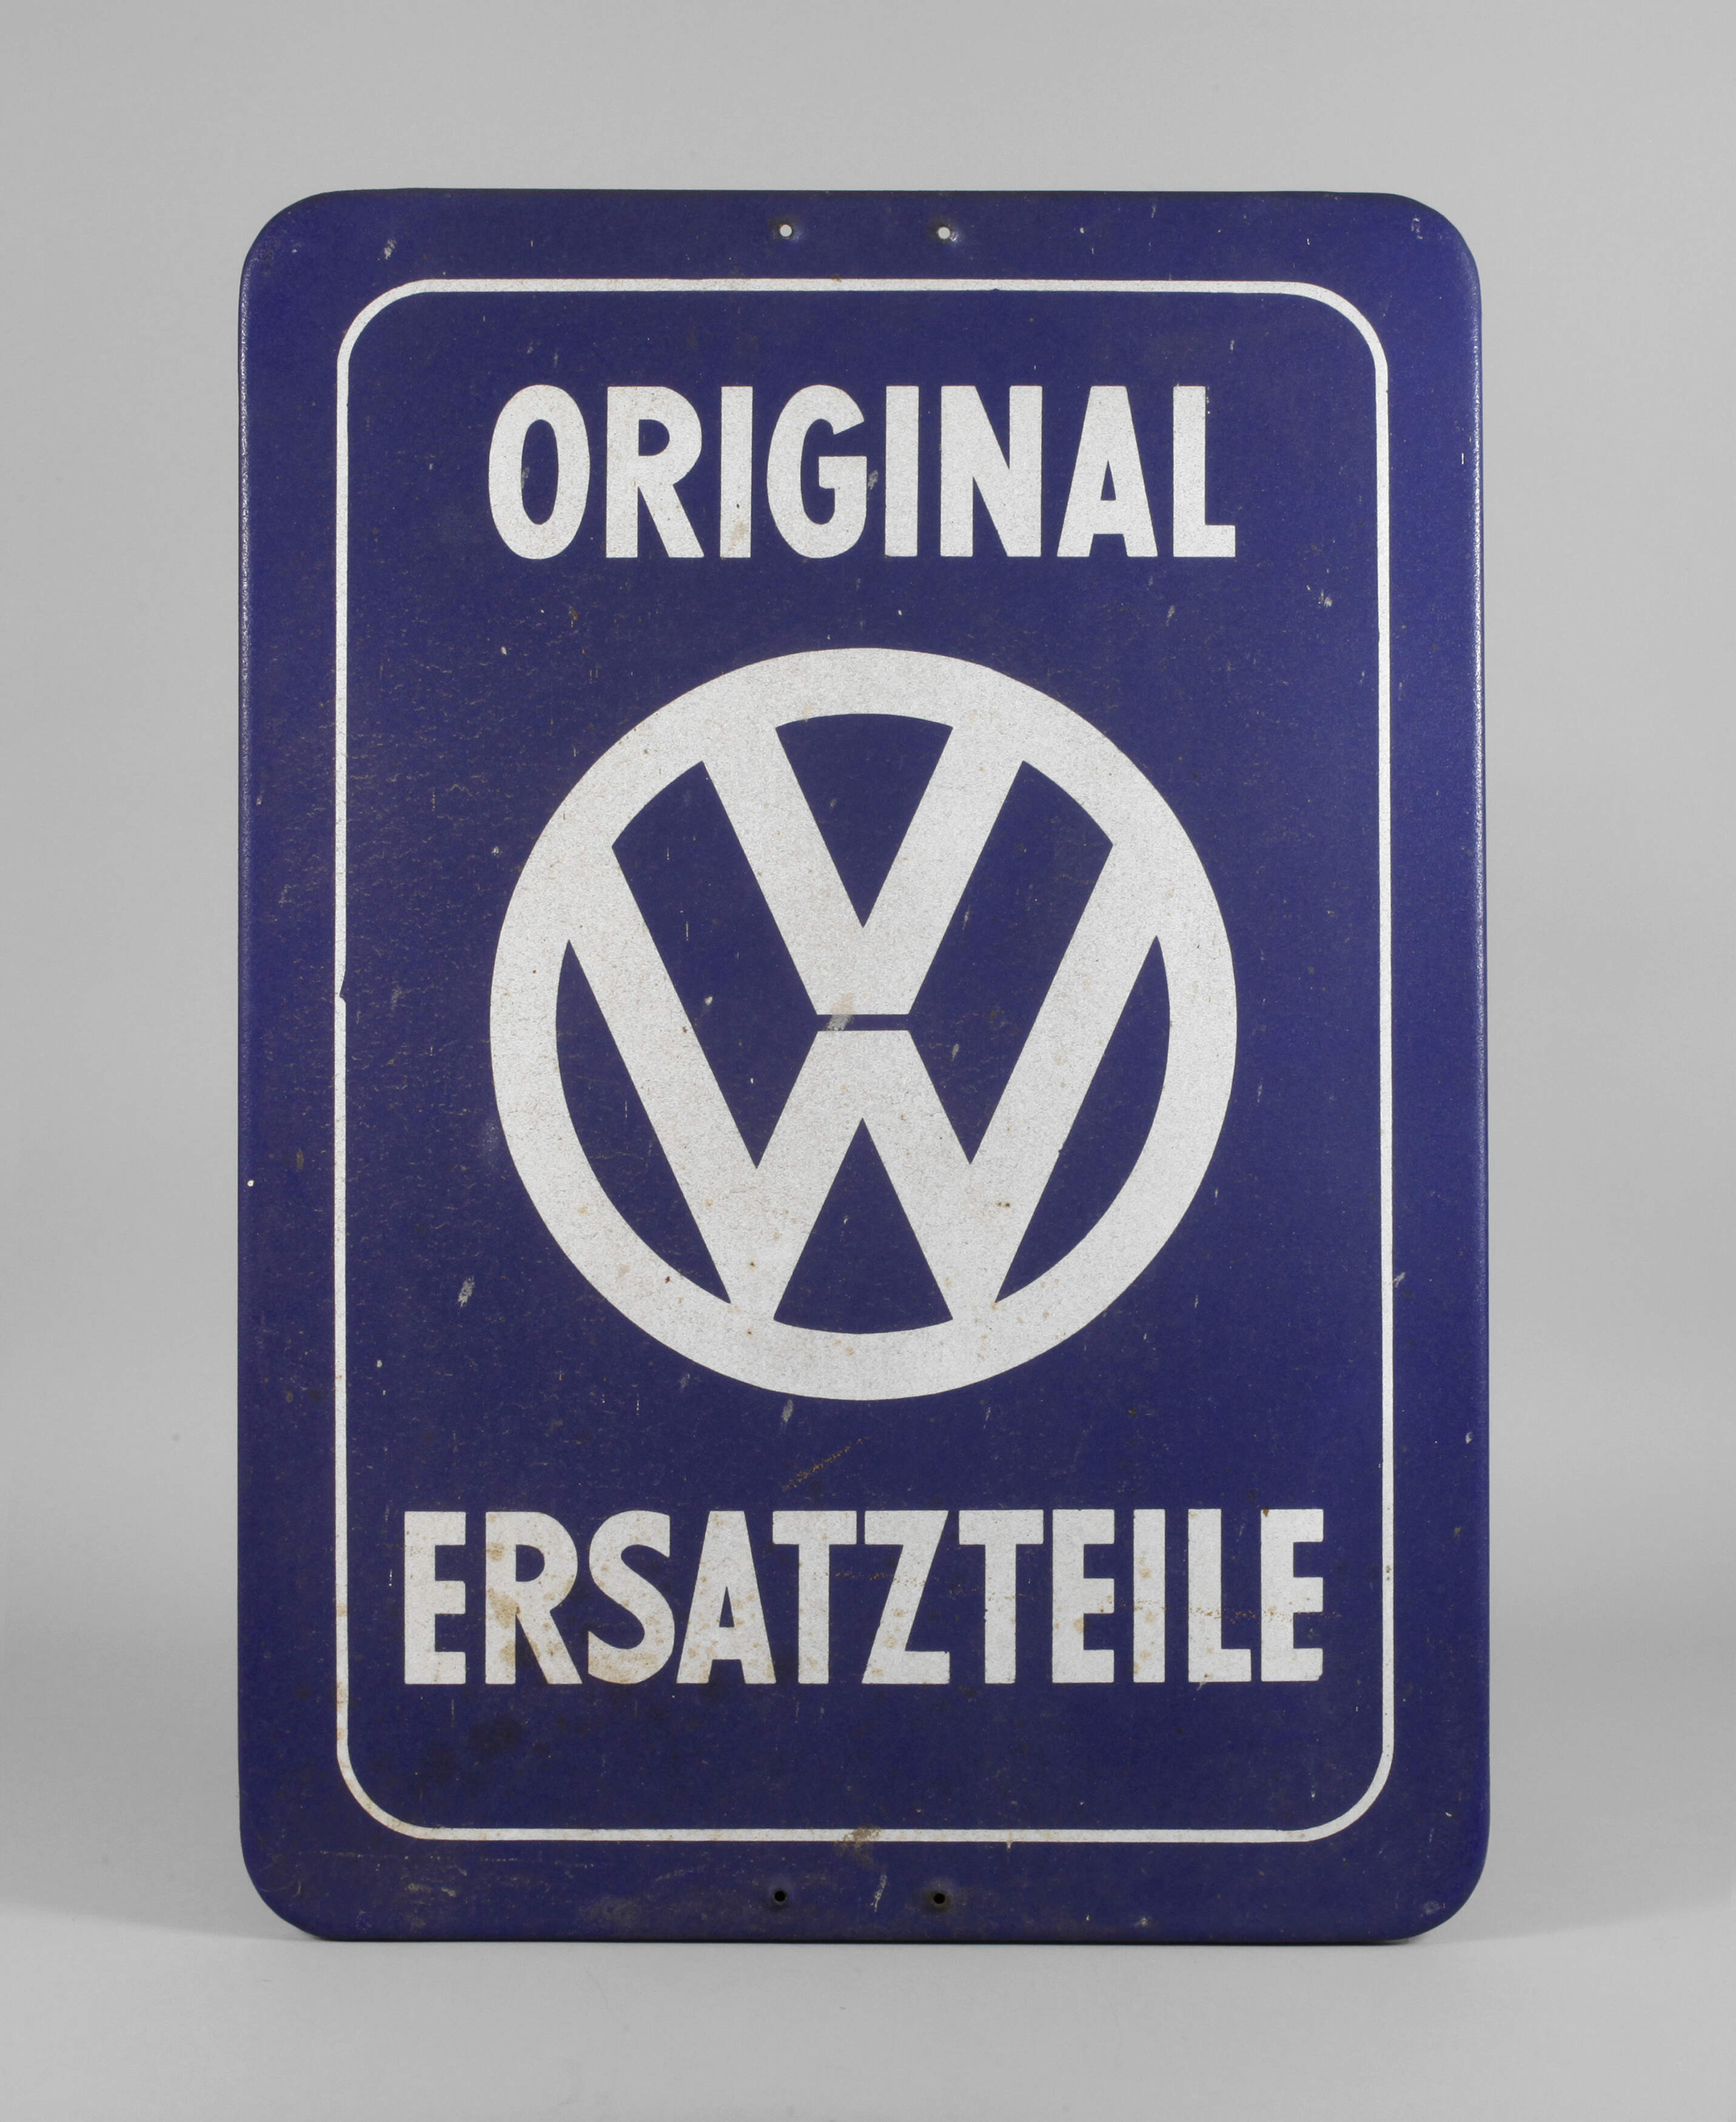 Emailleschild VW